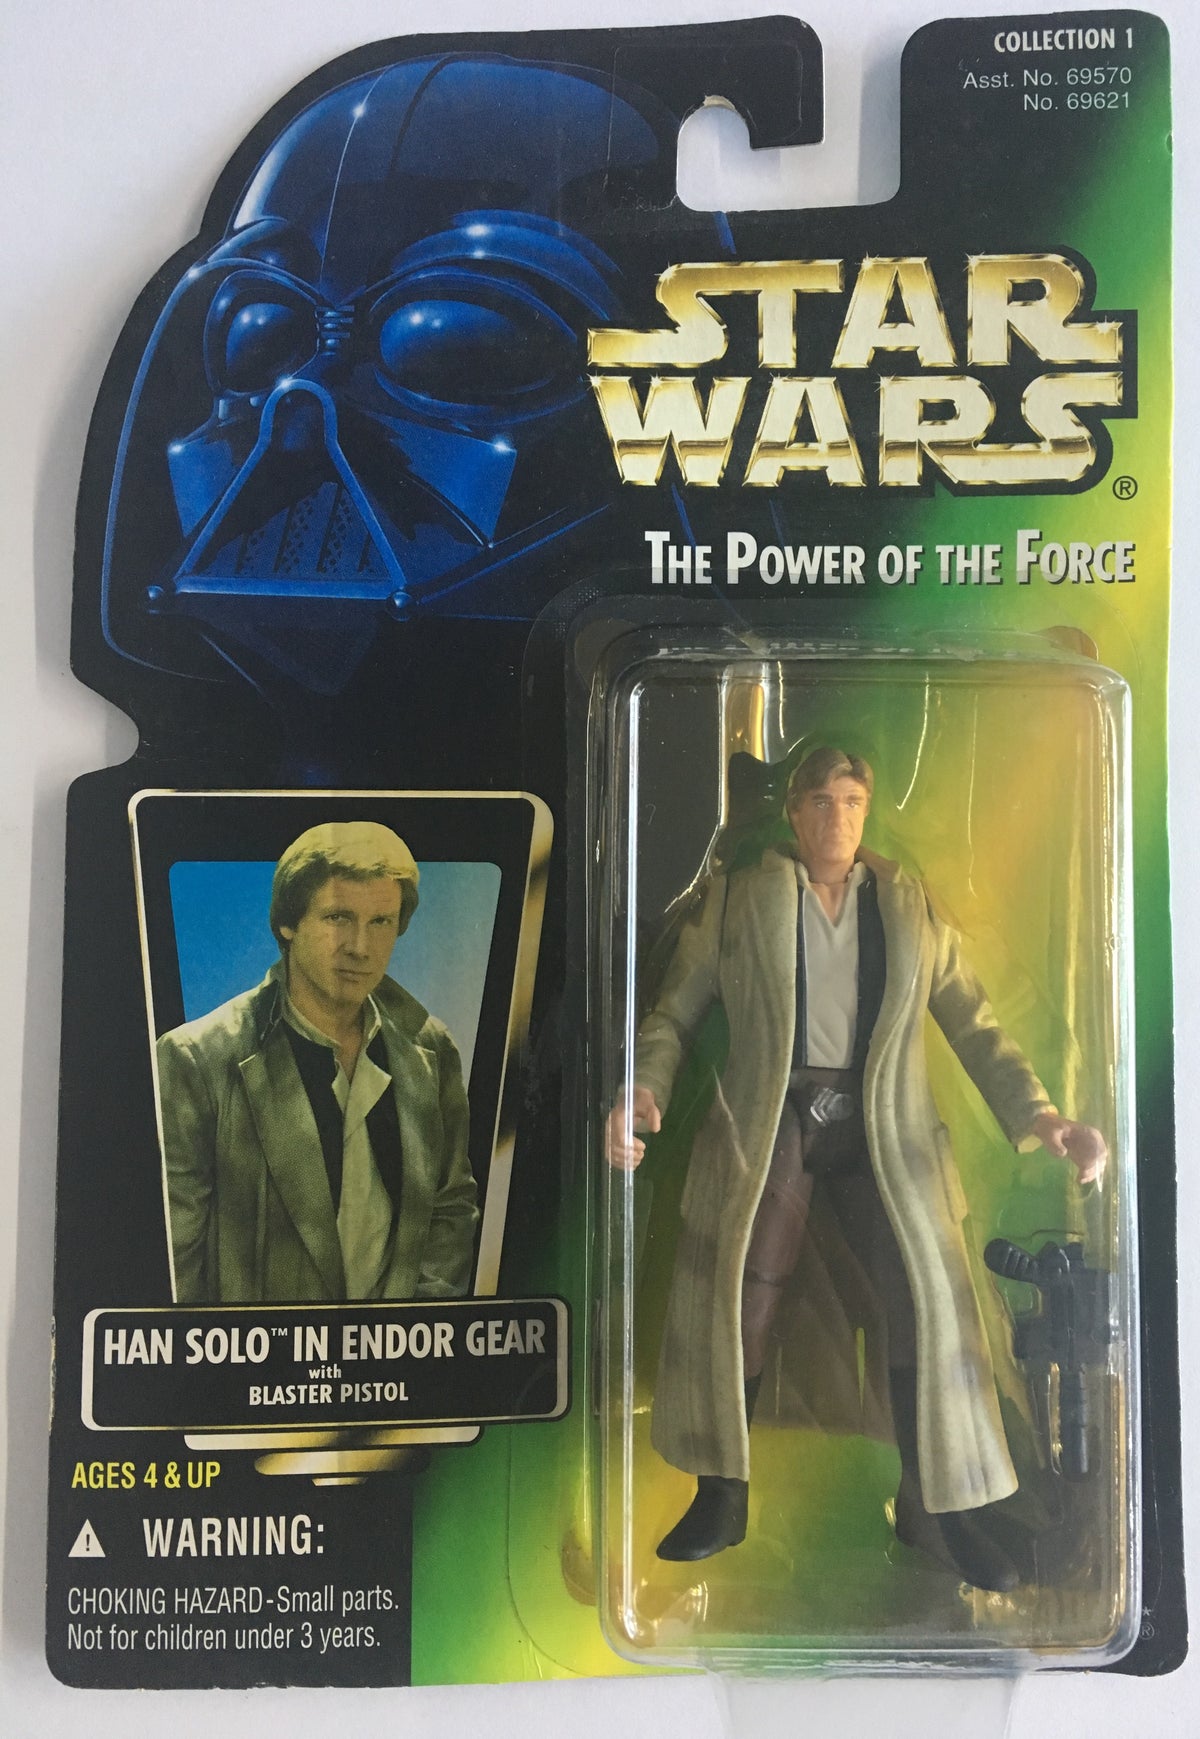 Han Solo in Endor Gear